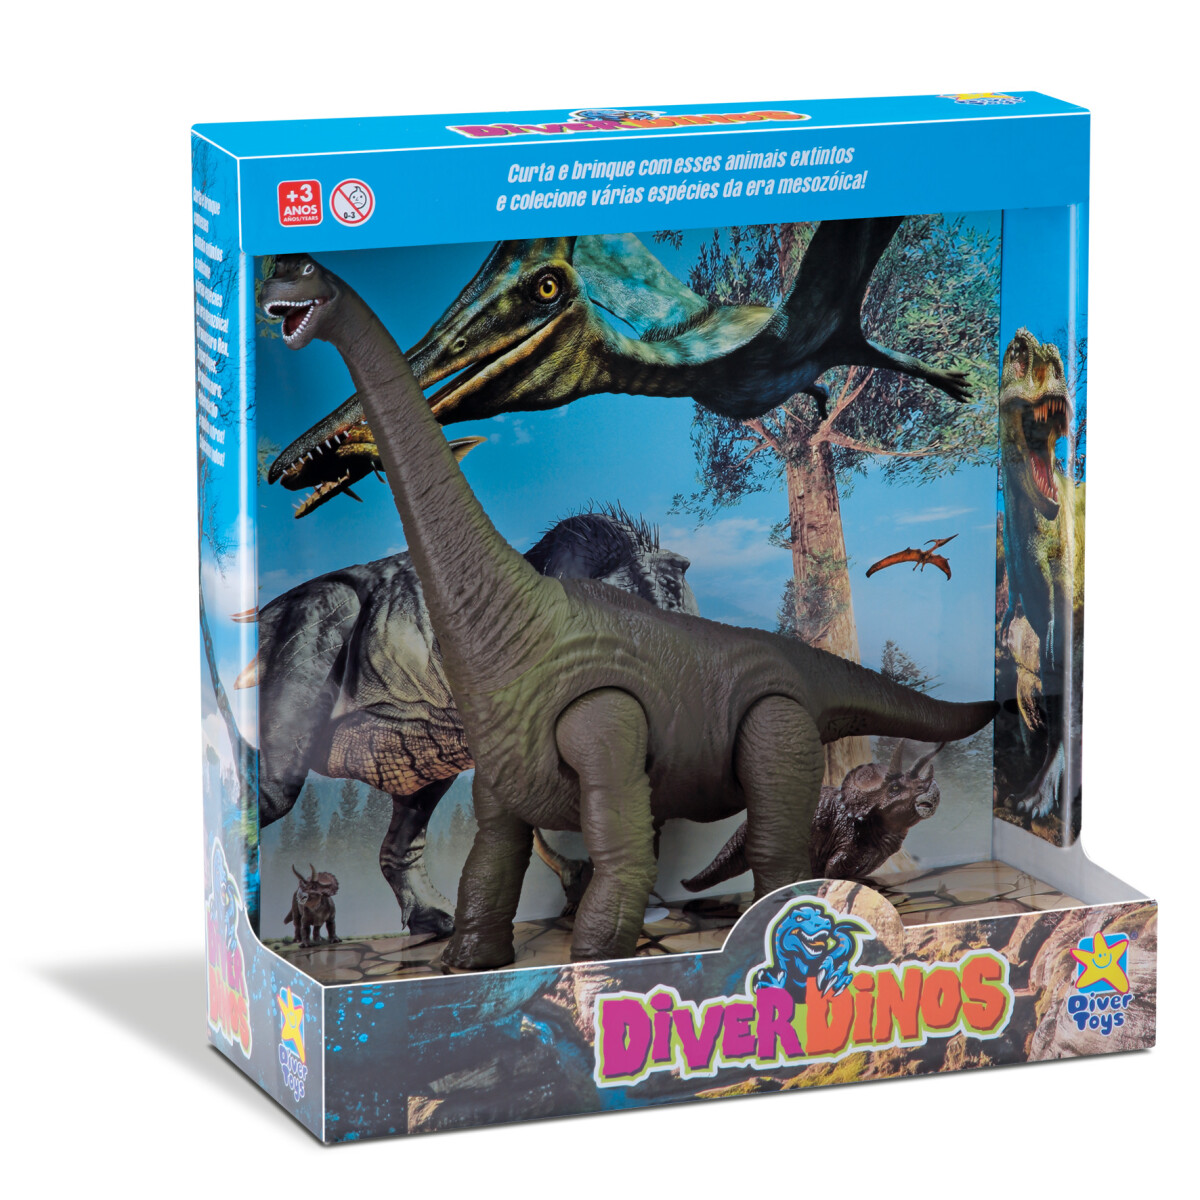 Figura Velociraptor Diver Dino Gigante - 001 